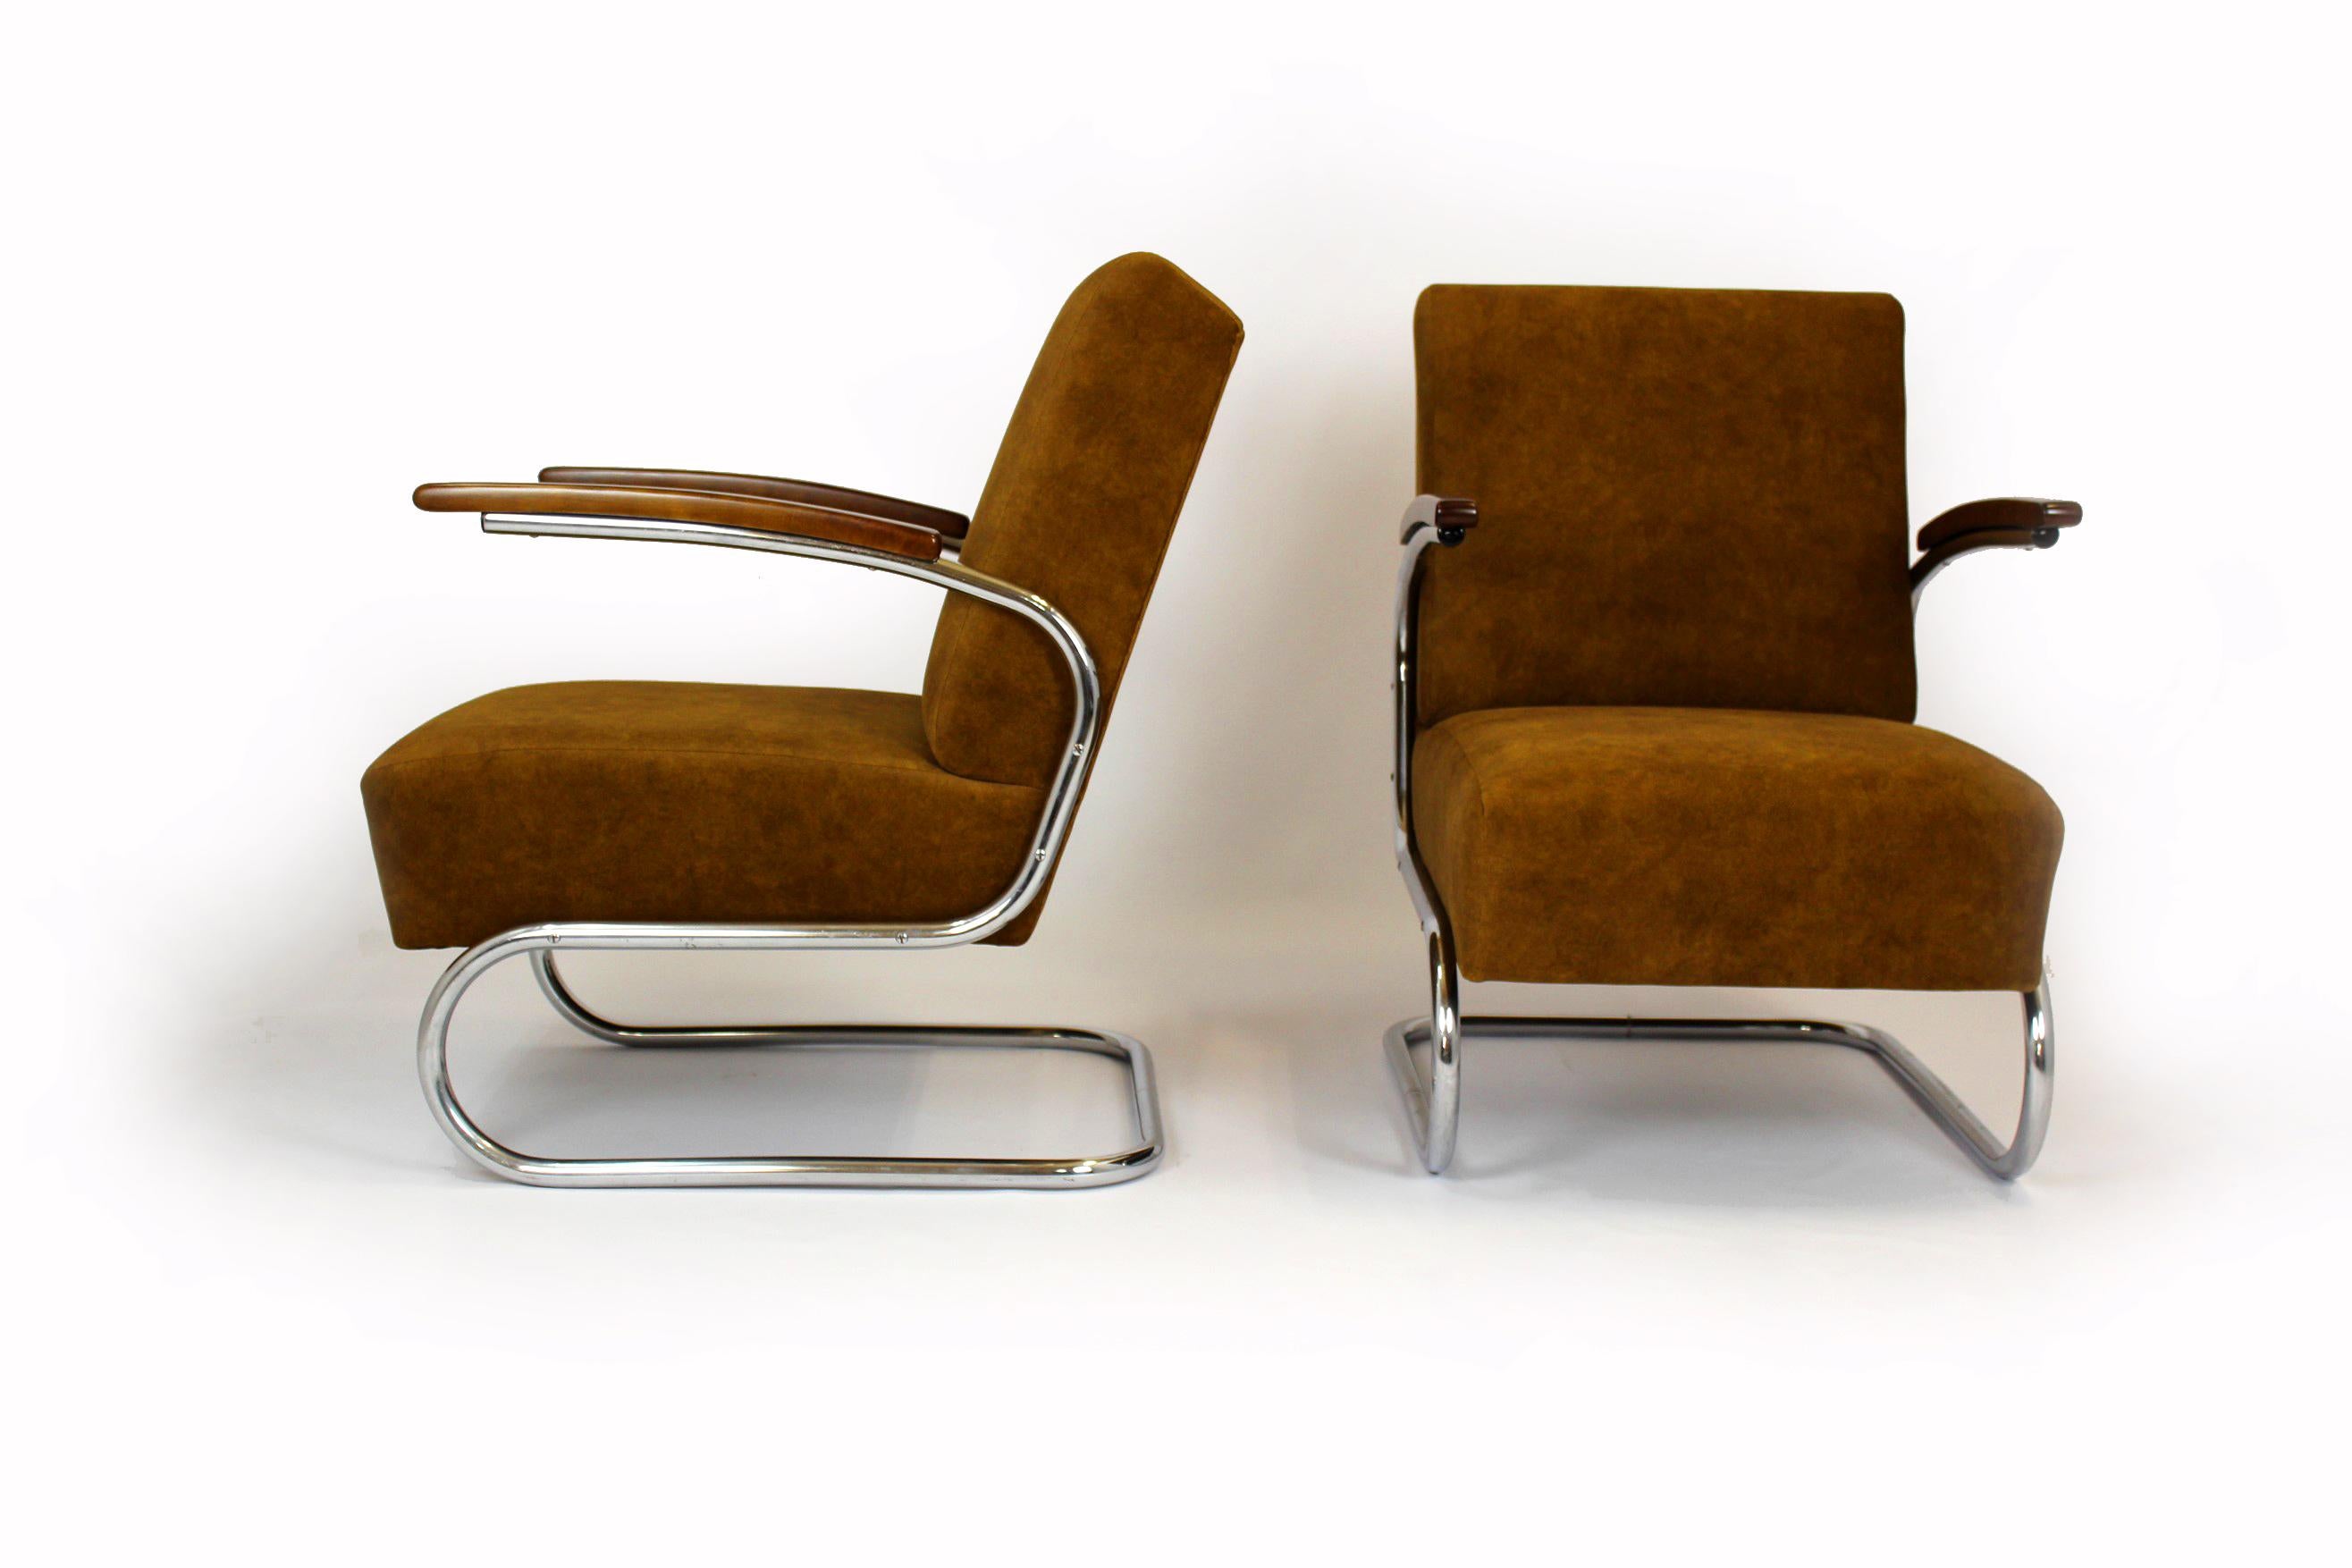 Ensemble de deux fauteuils cantilever S411 de style Bauhaus avec une structure en bois laqué et en acier tubulaire chromé. Conçu dans les années 1930 par Willem Hendrik Gispen et fabriqué par Mücke Melder sous licence Thonet.
Les fauteuils ont été